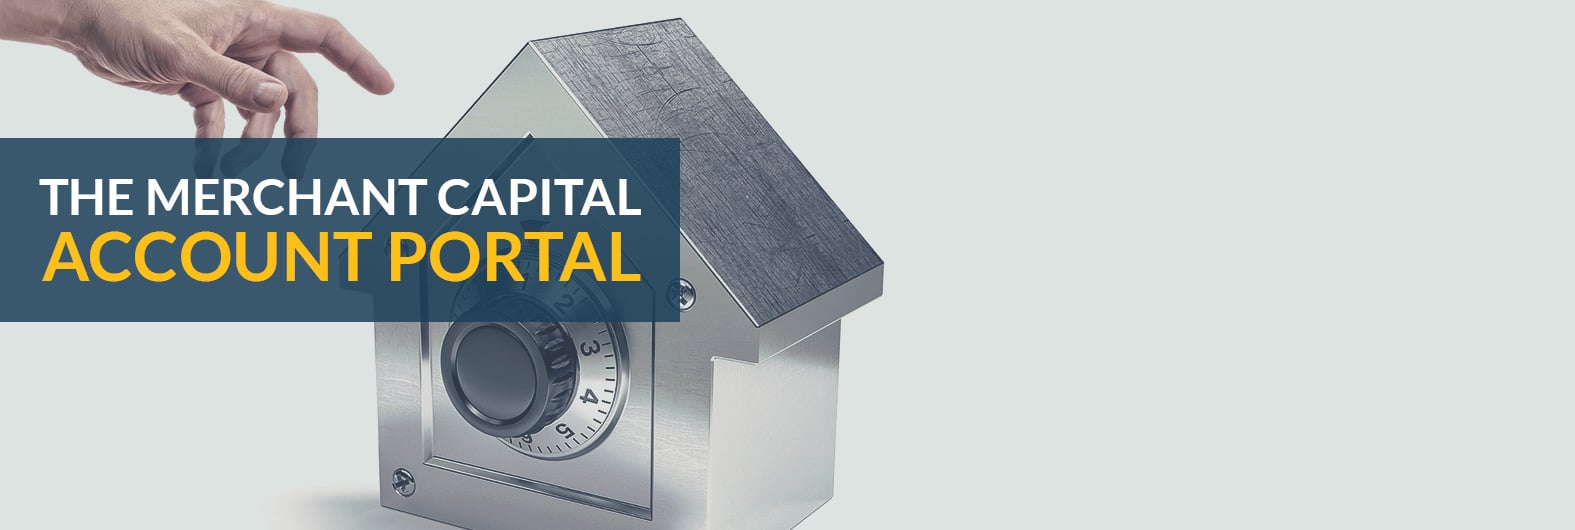 The Merchant Capital Account Portal